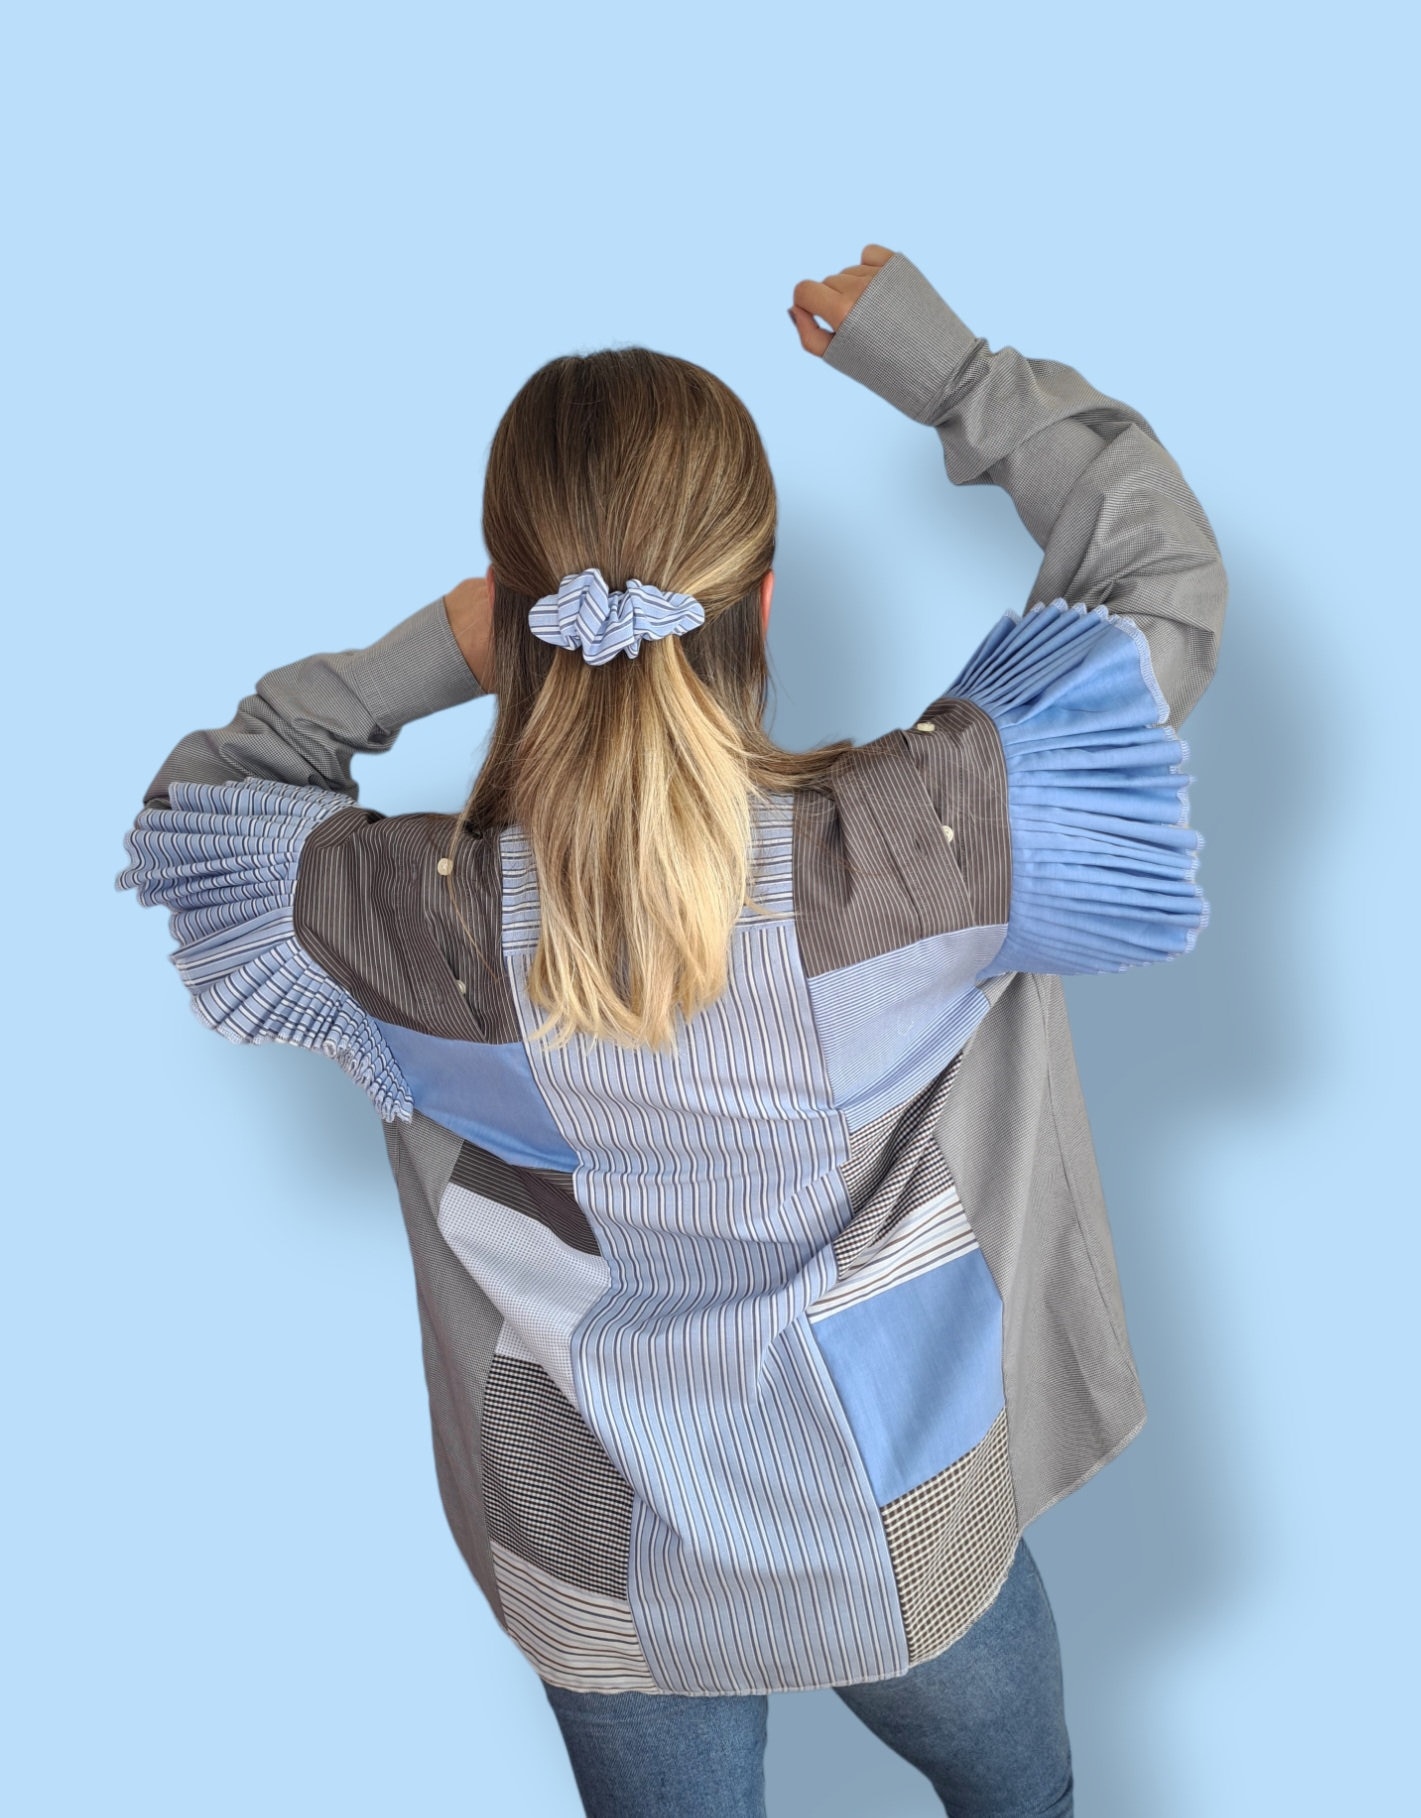 Upcycled Frauen Patchwork Shirts Mit Rüschen Und Offene Schultern/ Handgemachtes Baumwoll Top/ Bluse Von Herrenhemden/ One Of A Kind von DamuClothing